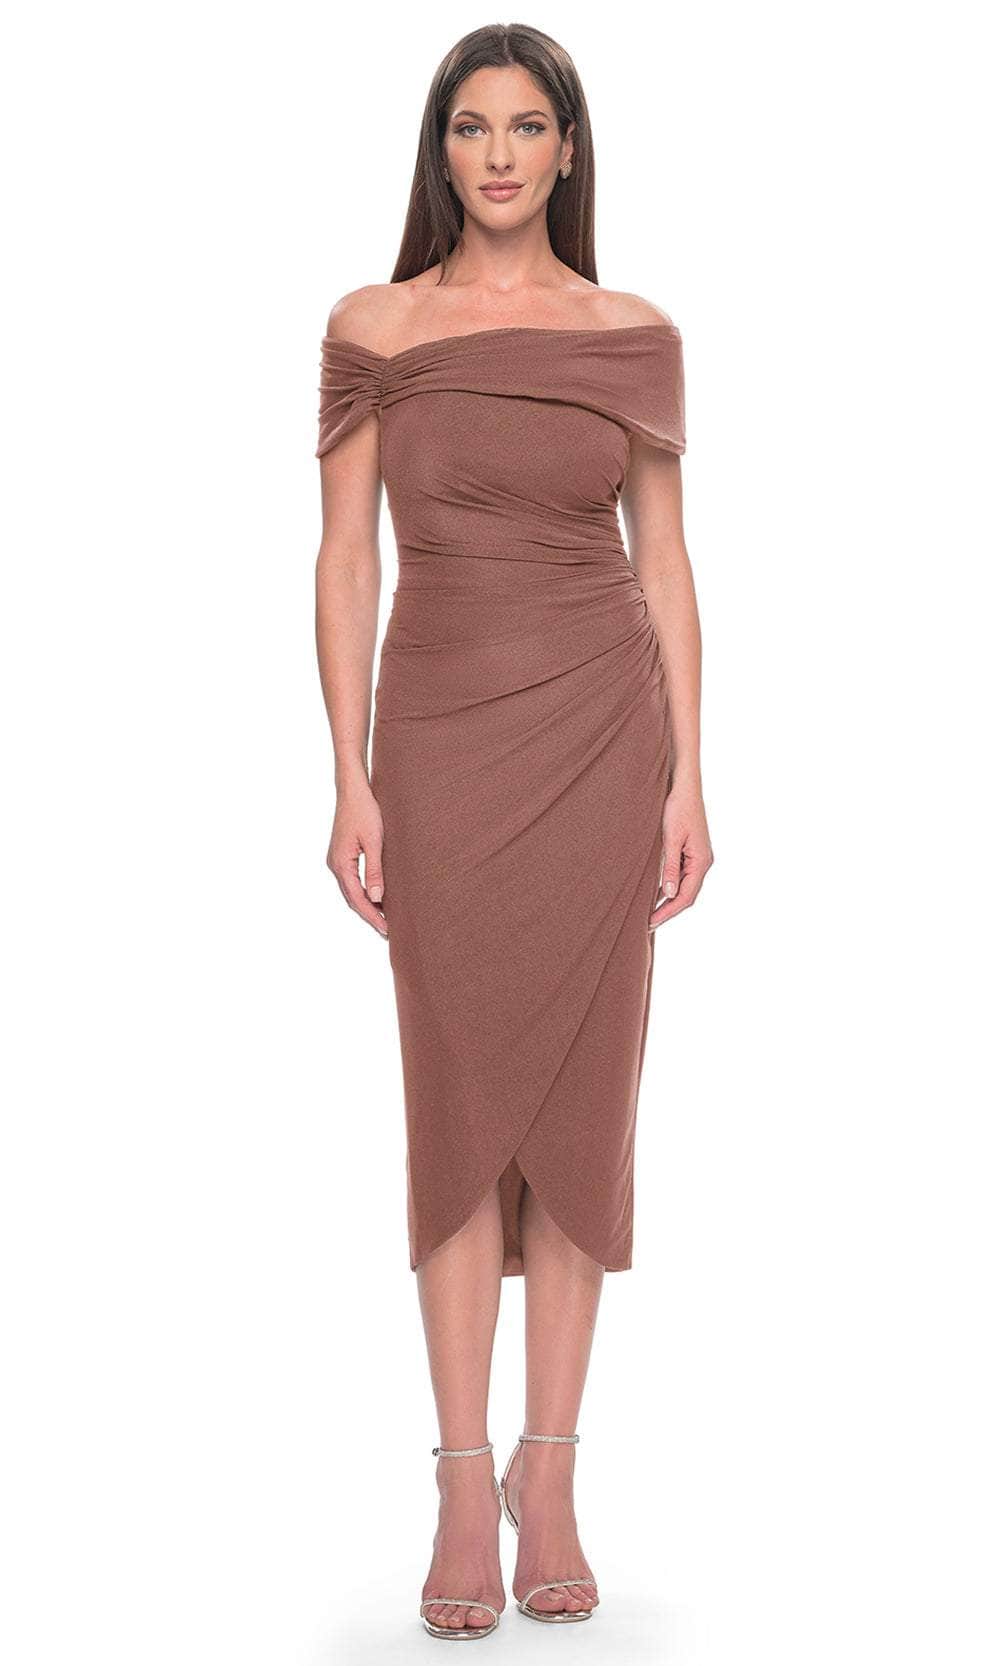 La Femme 30109 - Tulip Hem Cocktail Dress Cocktail Dresses 4 / Cocoa